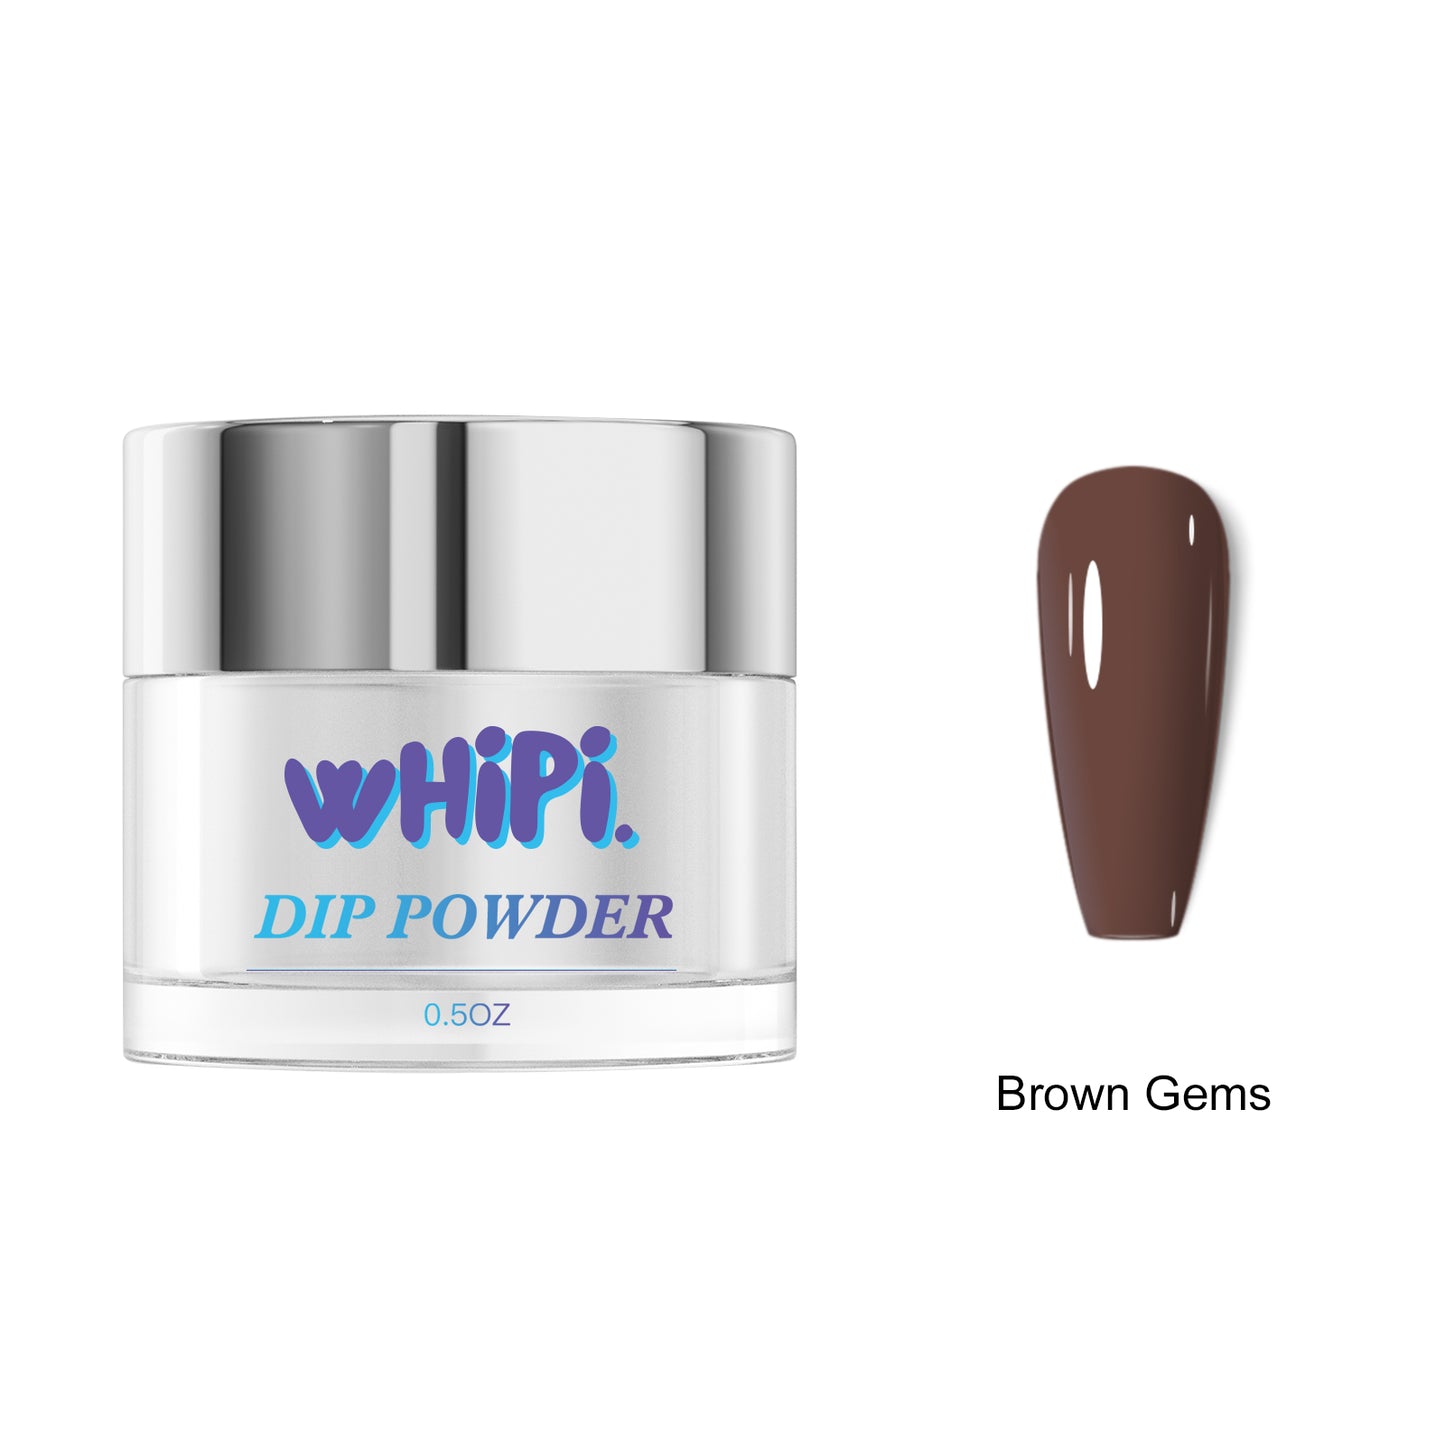 Brown Gems Dip Powder